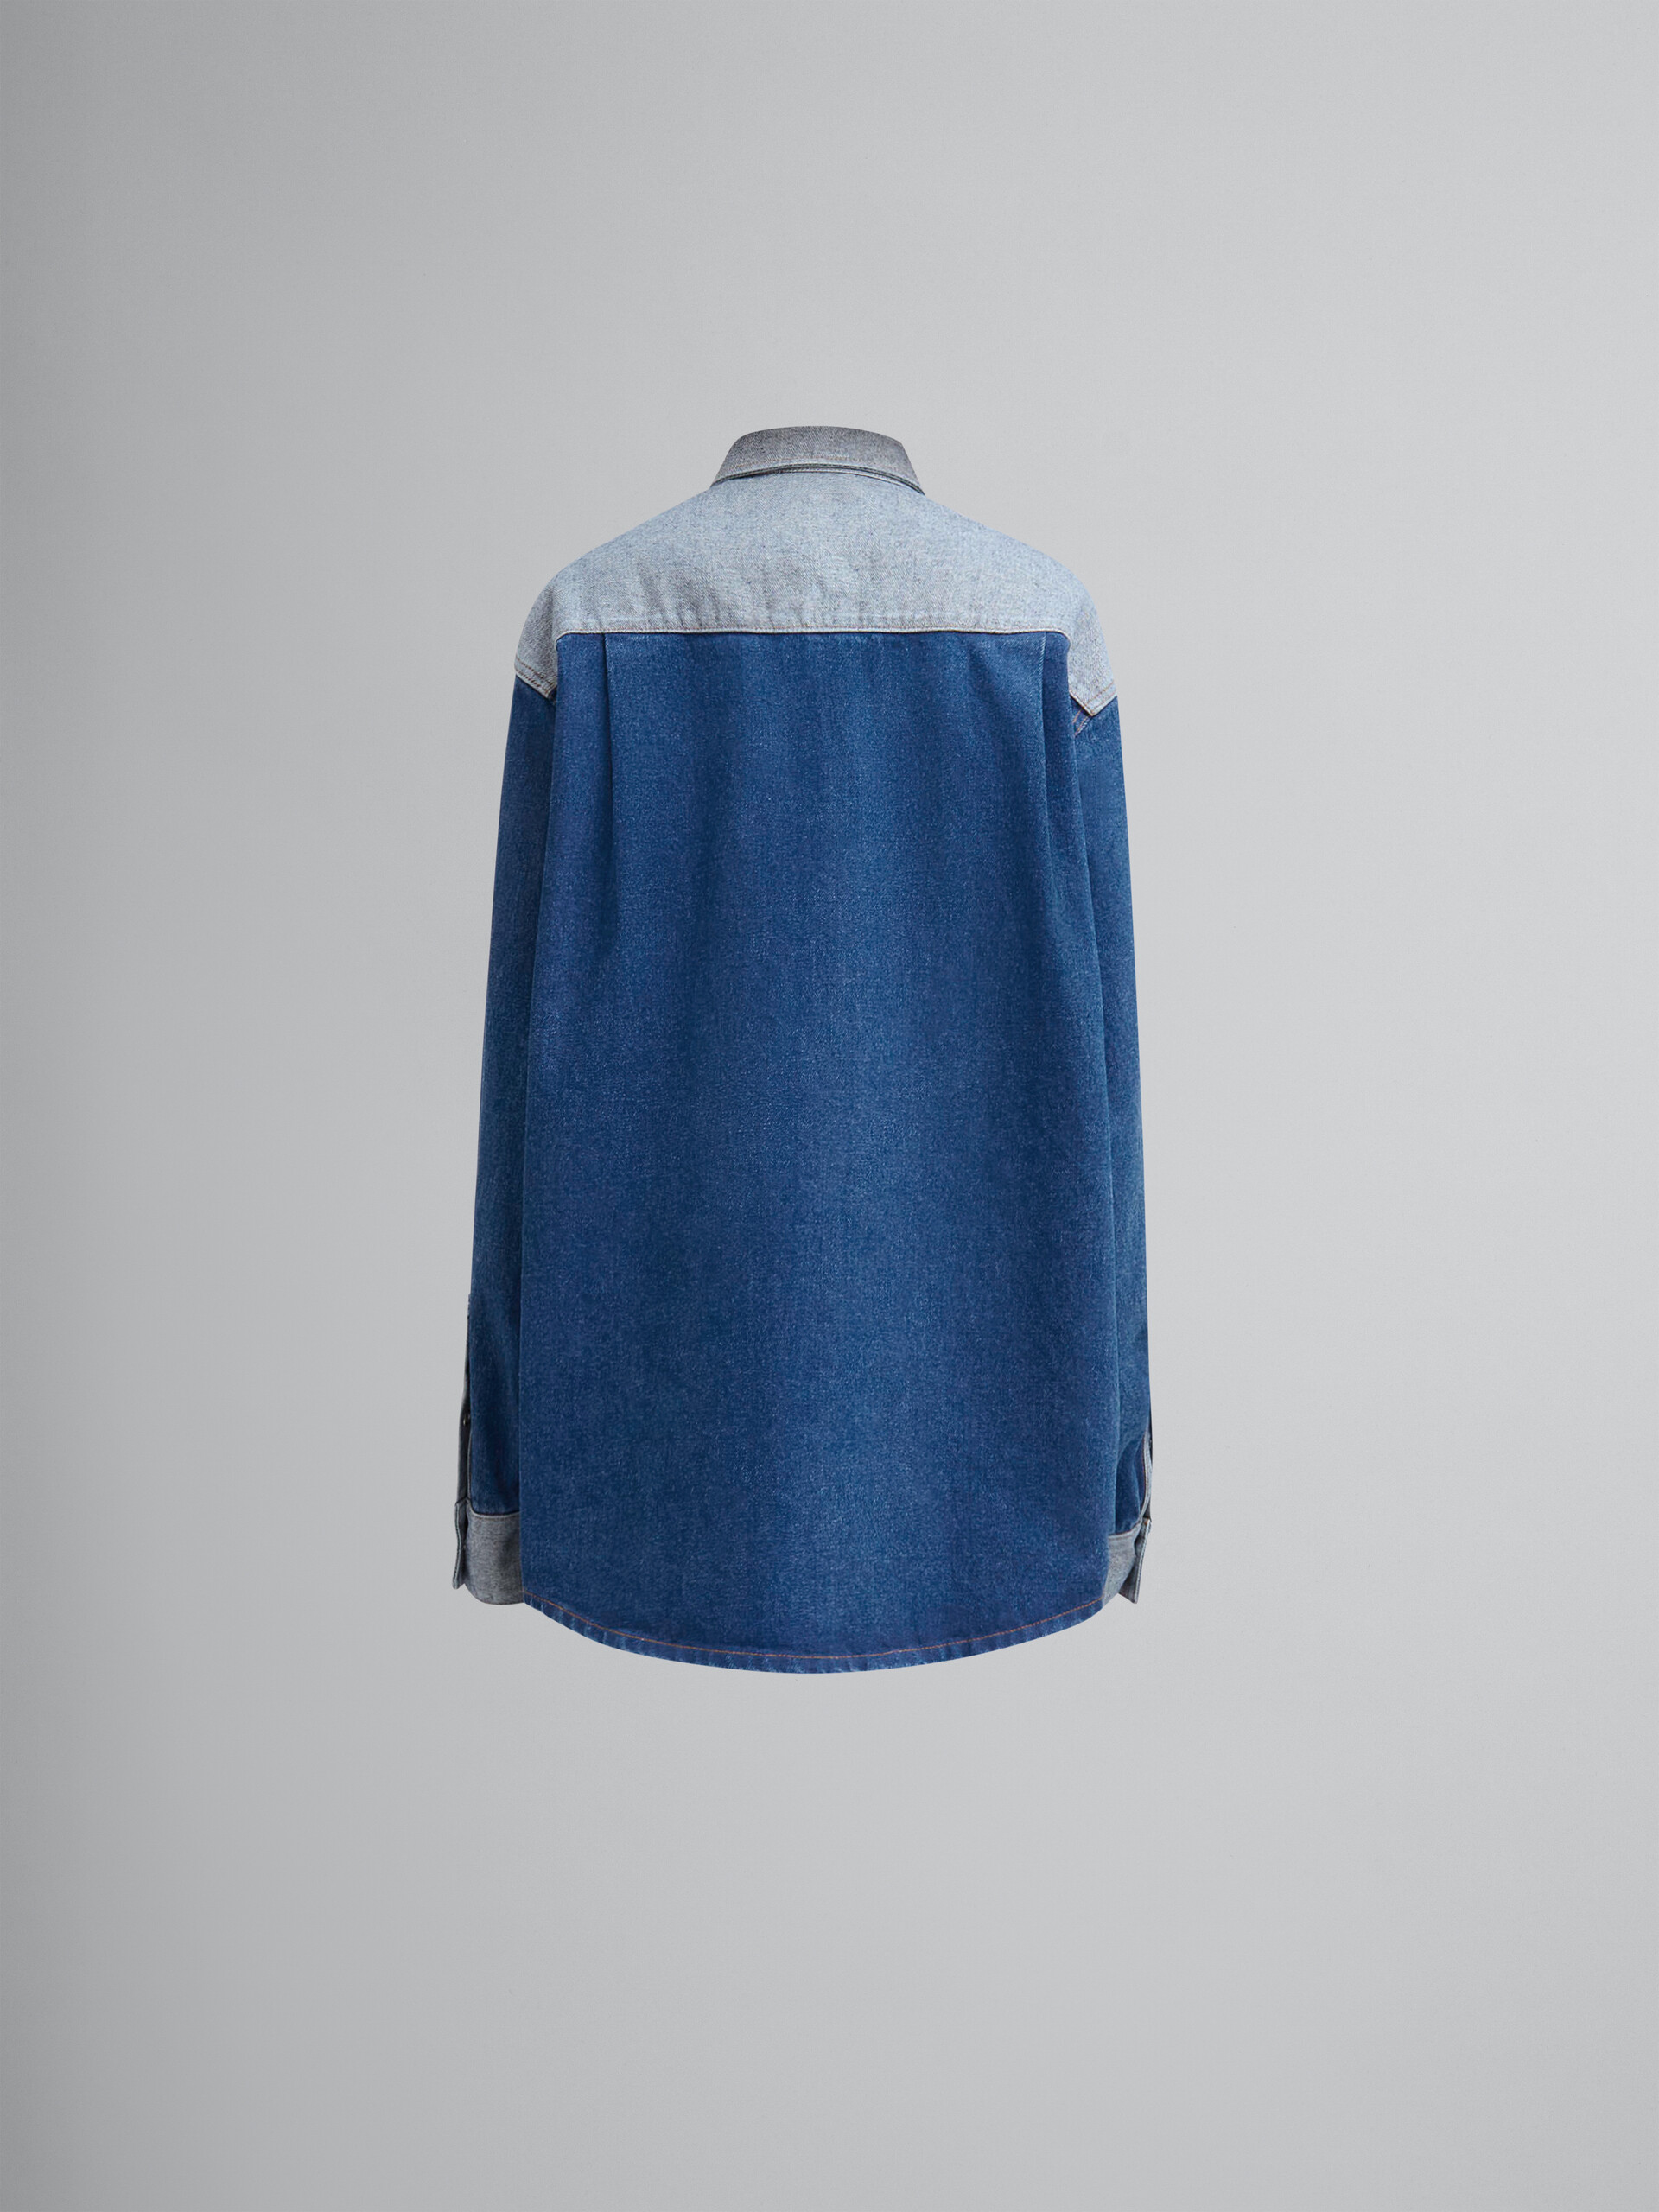 Camisa bicolor azul de denim con bordes sin rematar - Camisas - Image 2